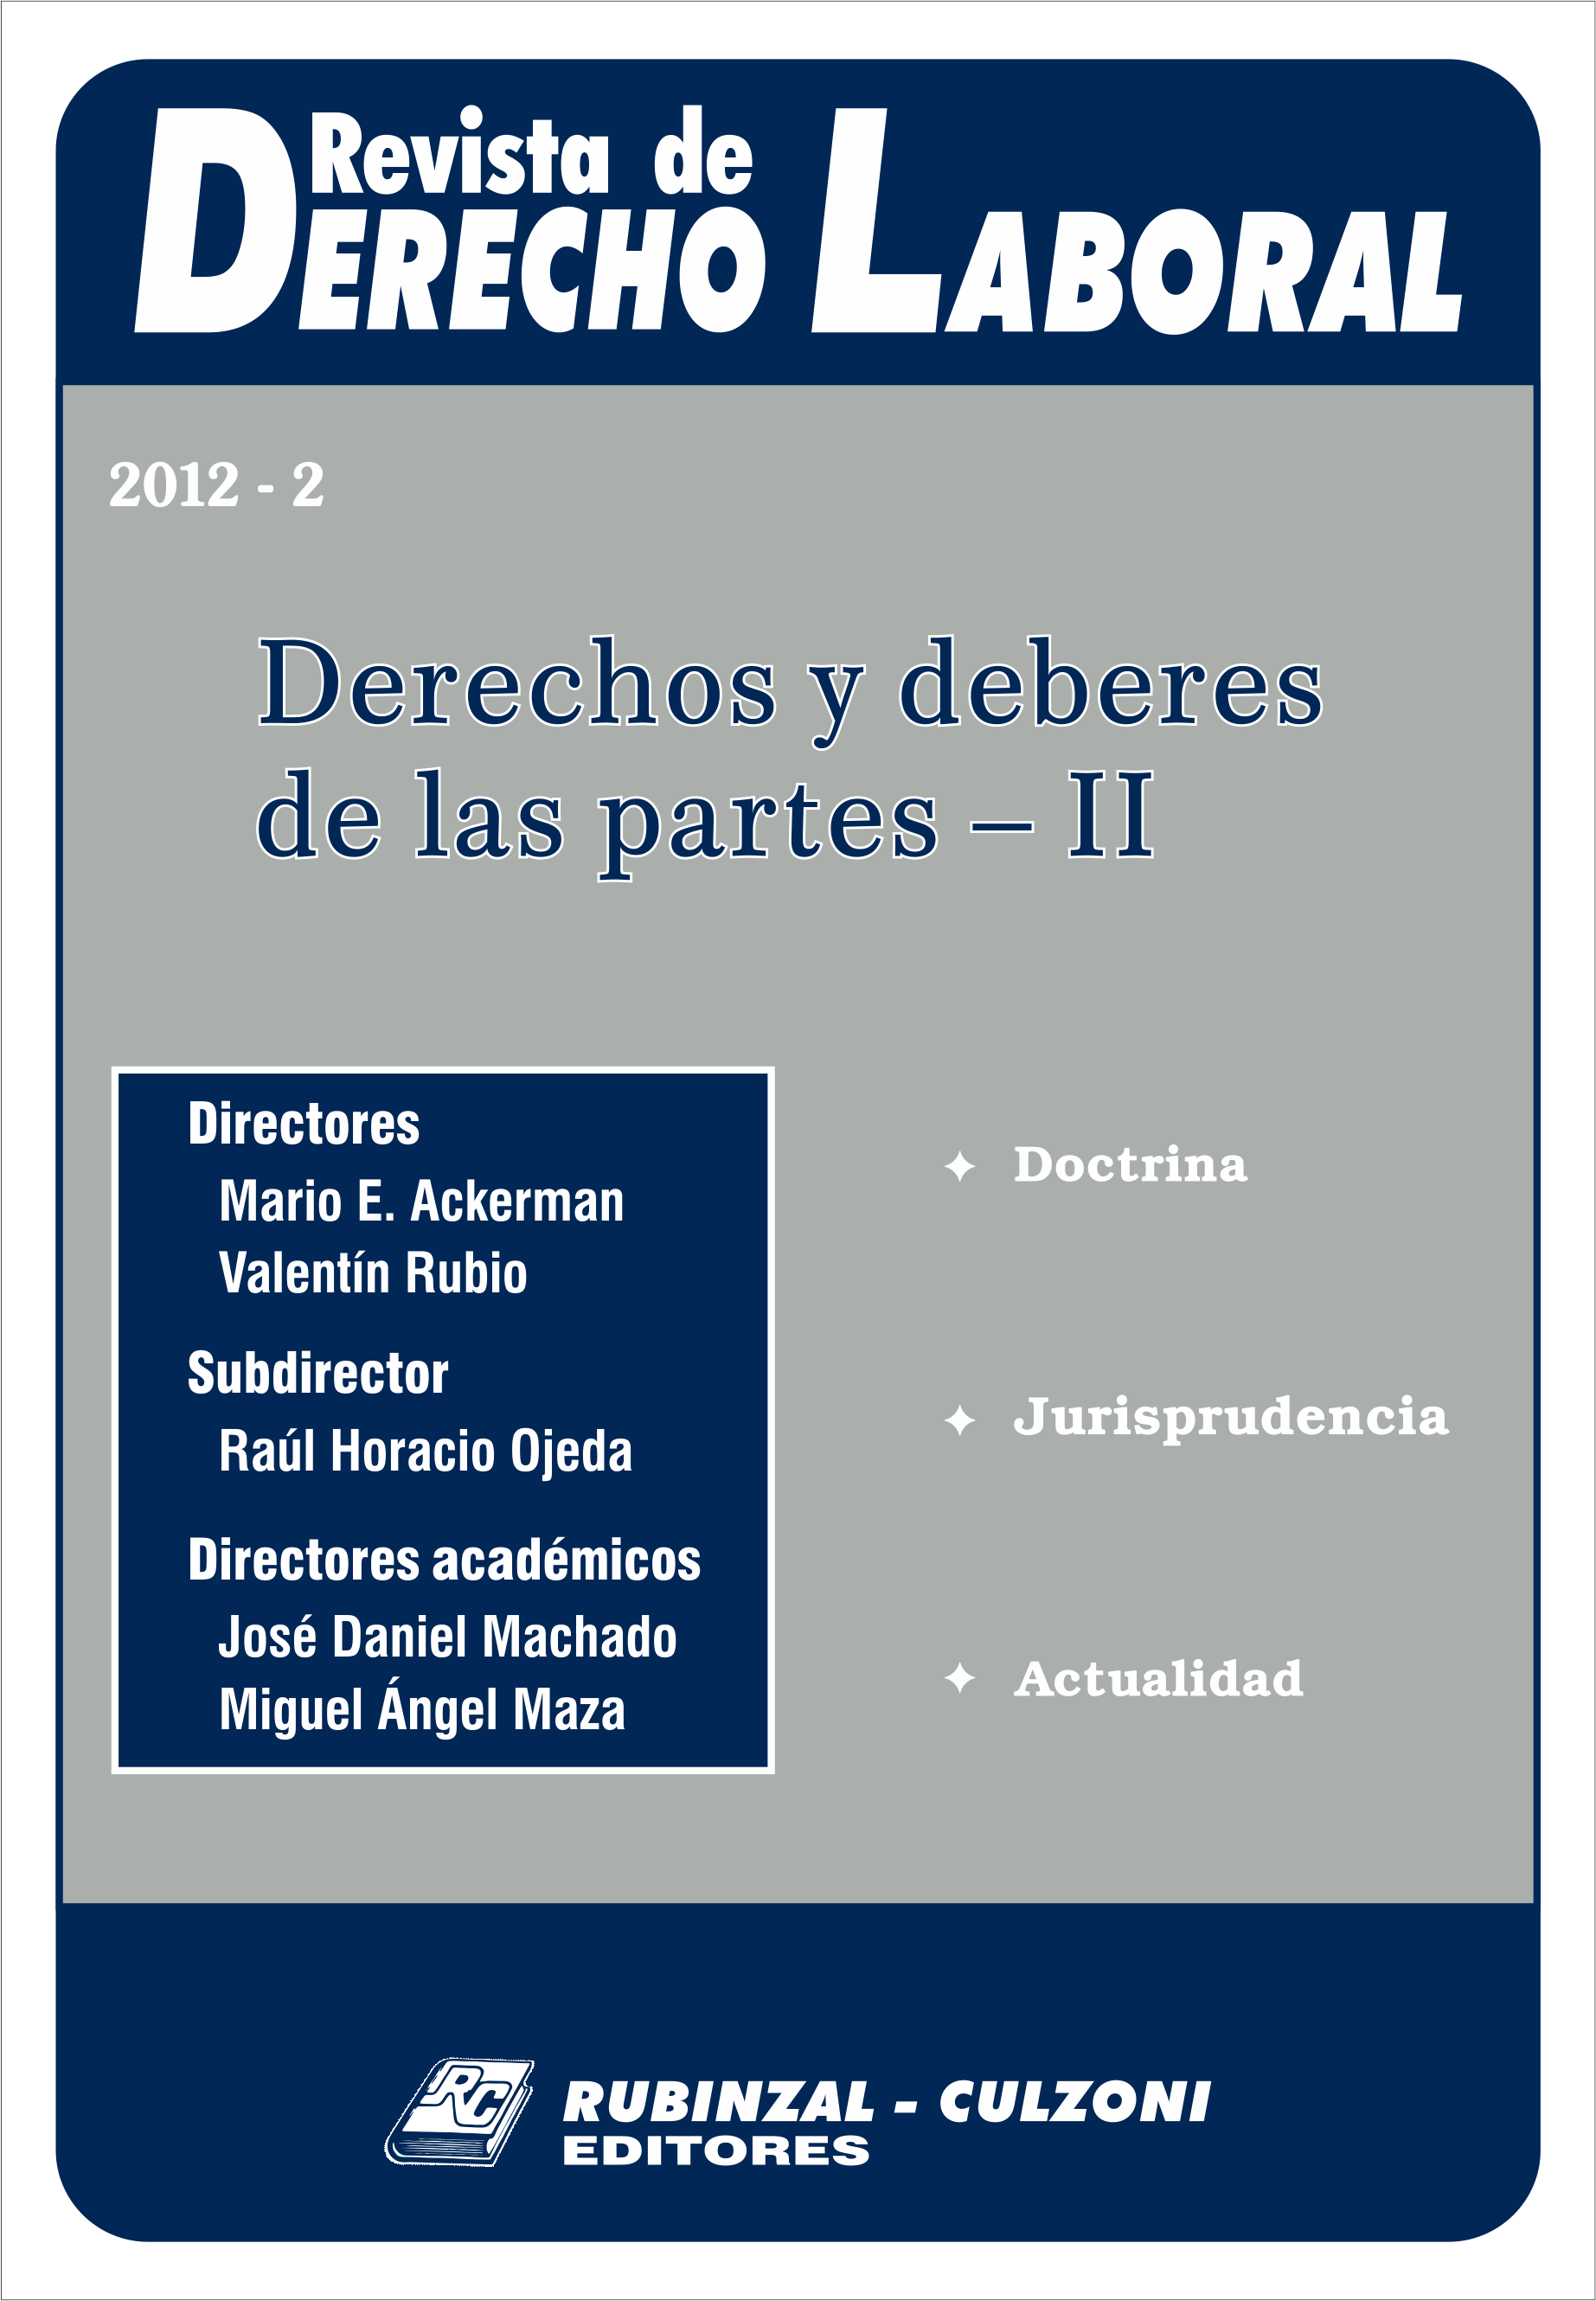 Revista de Derecho Laboral - Derechos y deberes de las partes - II.